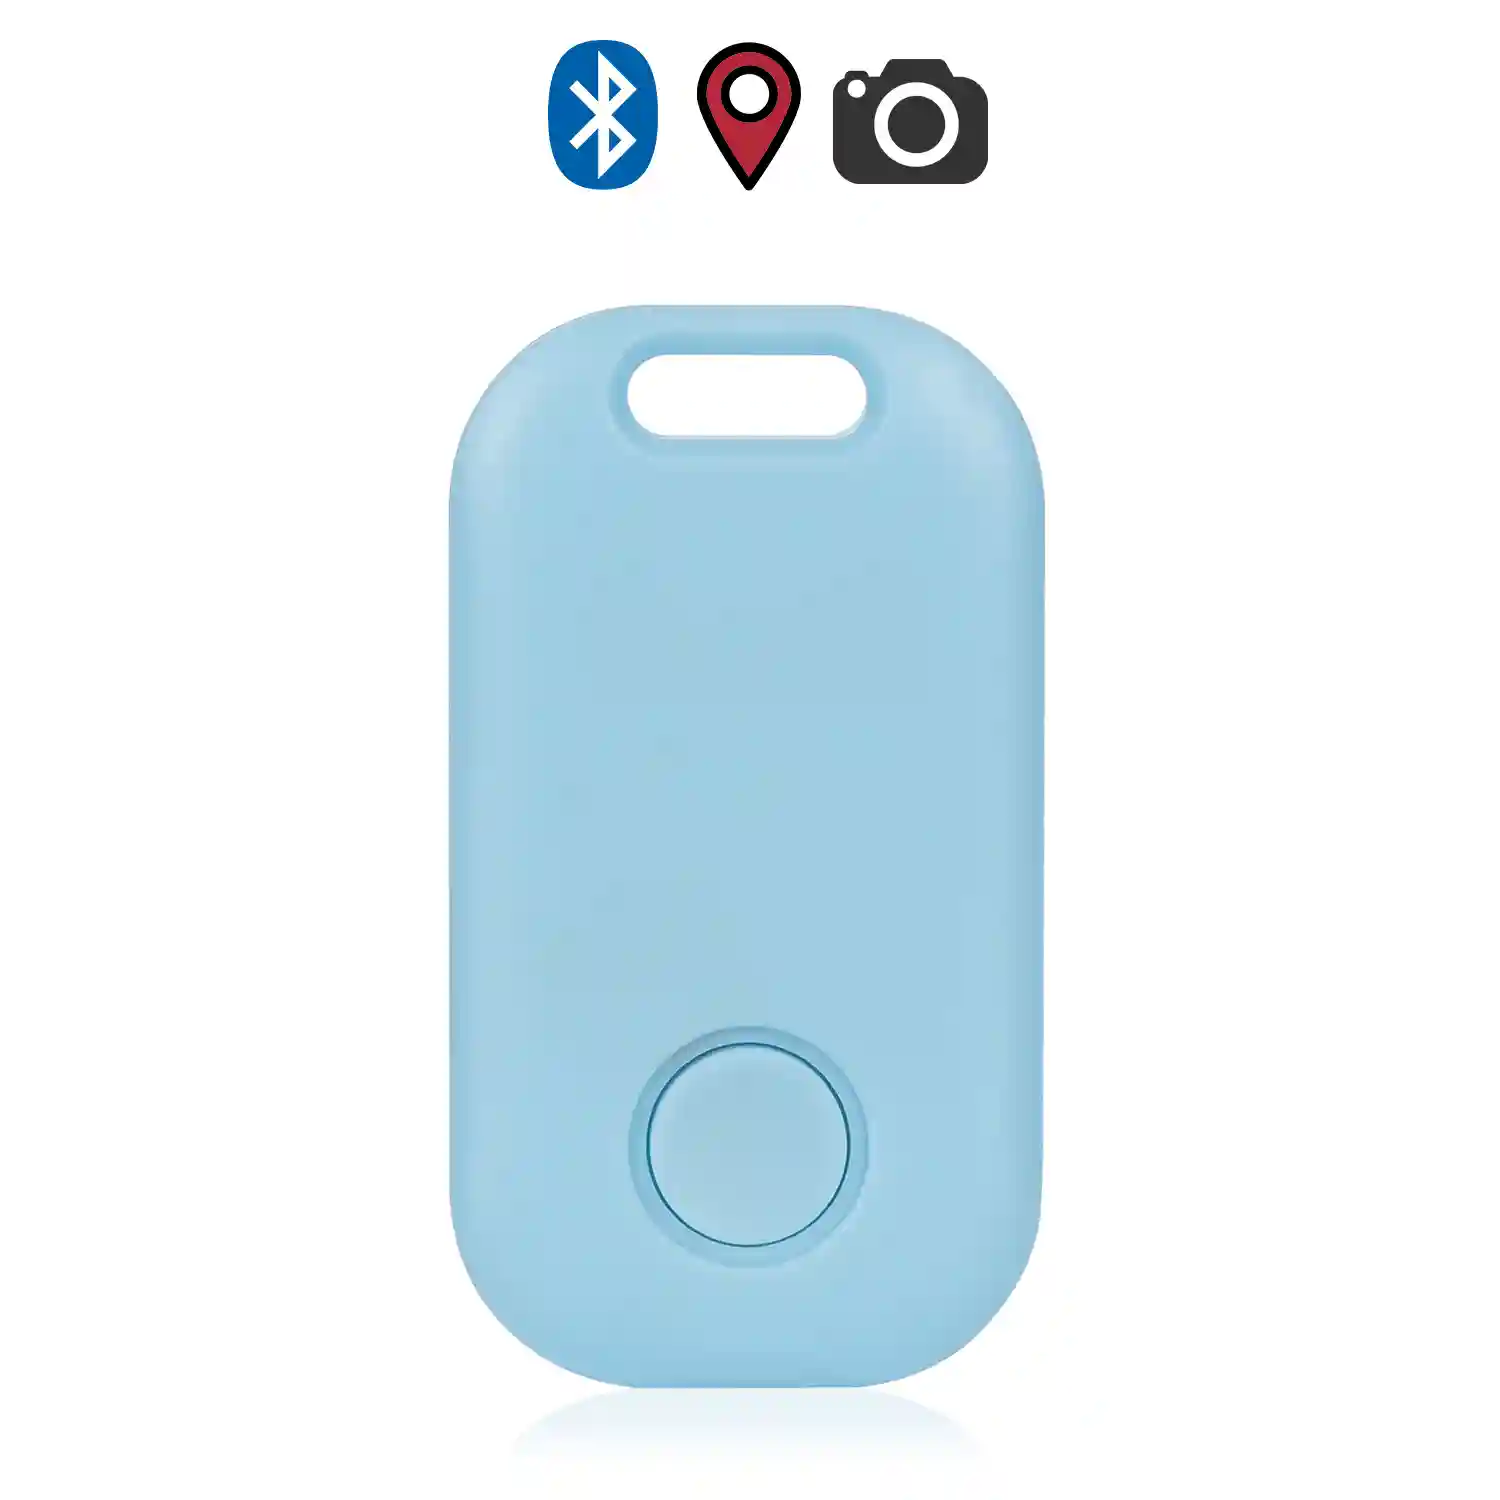 Llavero localizador redondo Bluetooth 4.0 multifunción, con indicador GPS  de última localización. Para mascotas, llaves, maletas